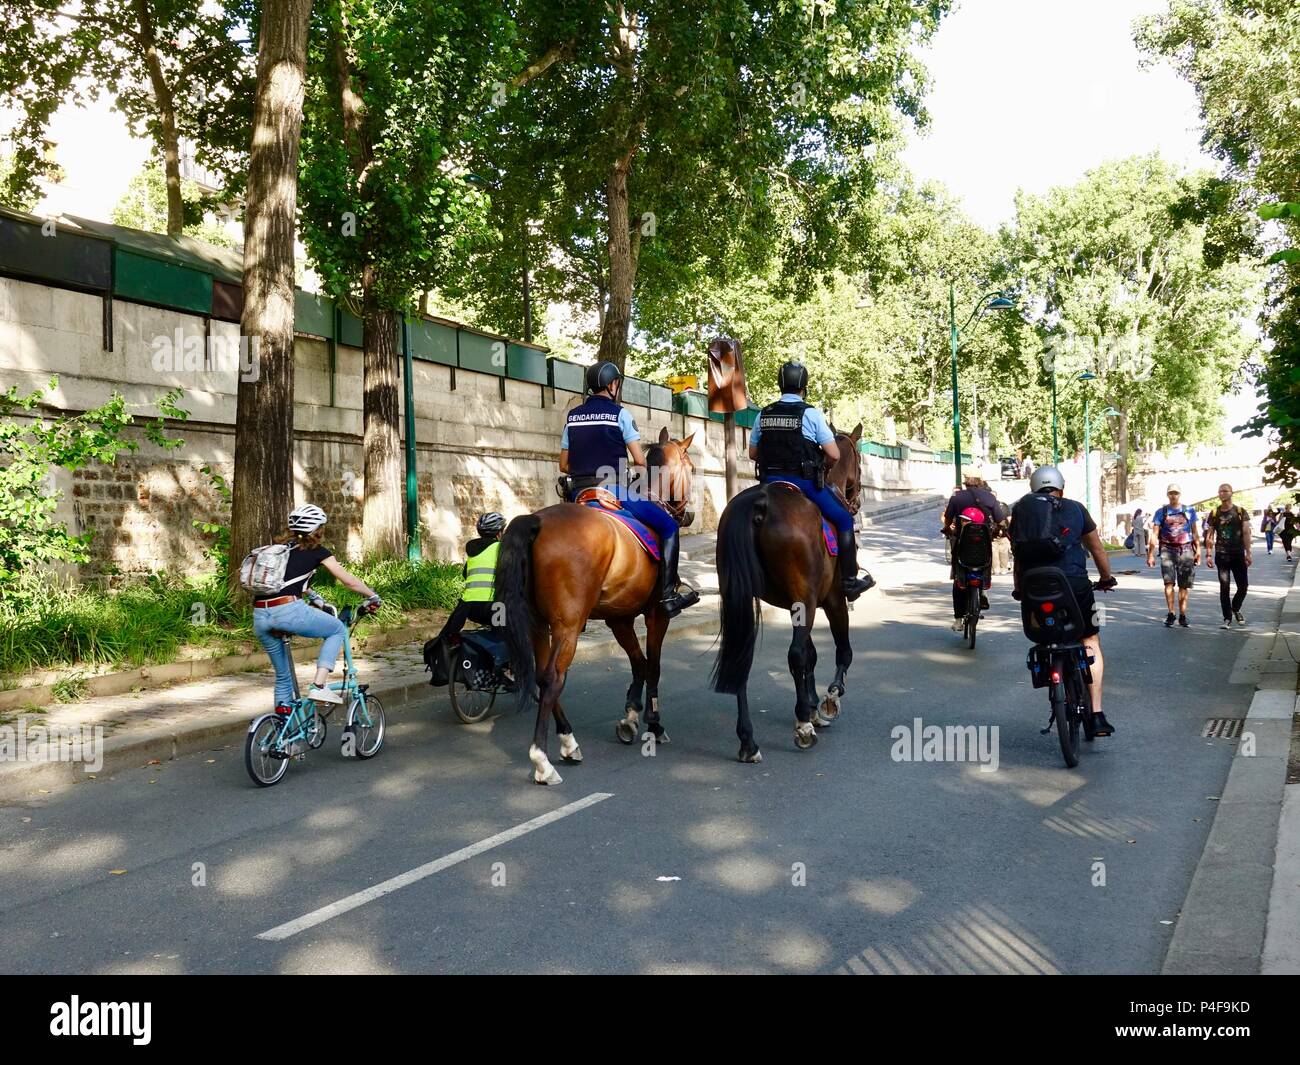 Kinder und Erwachsene Reiten Fahrräder letzten zwei gendarmen auf dem Pferderücken patrouillieren die richtige Bank Rives de Seine, während der Fête de la musique, Paris, Frankreich Stockfoto